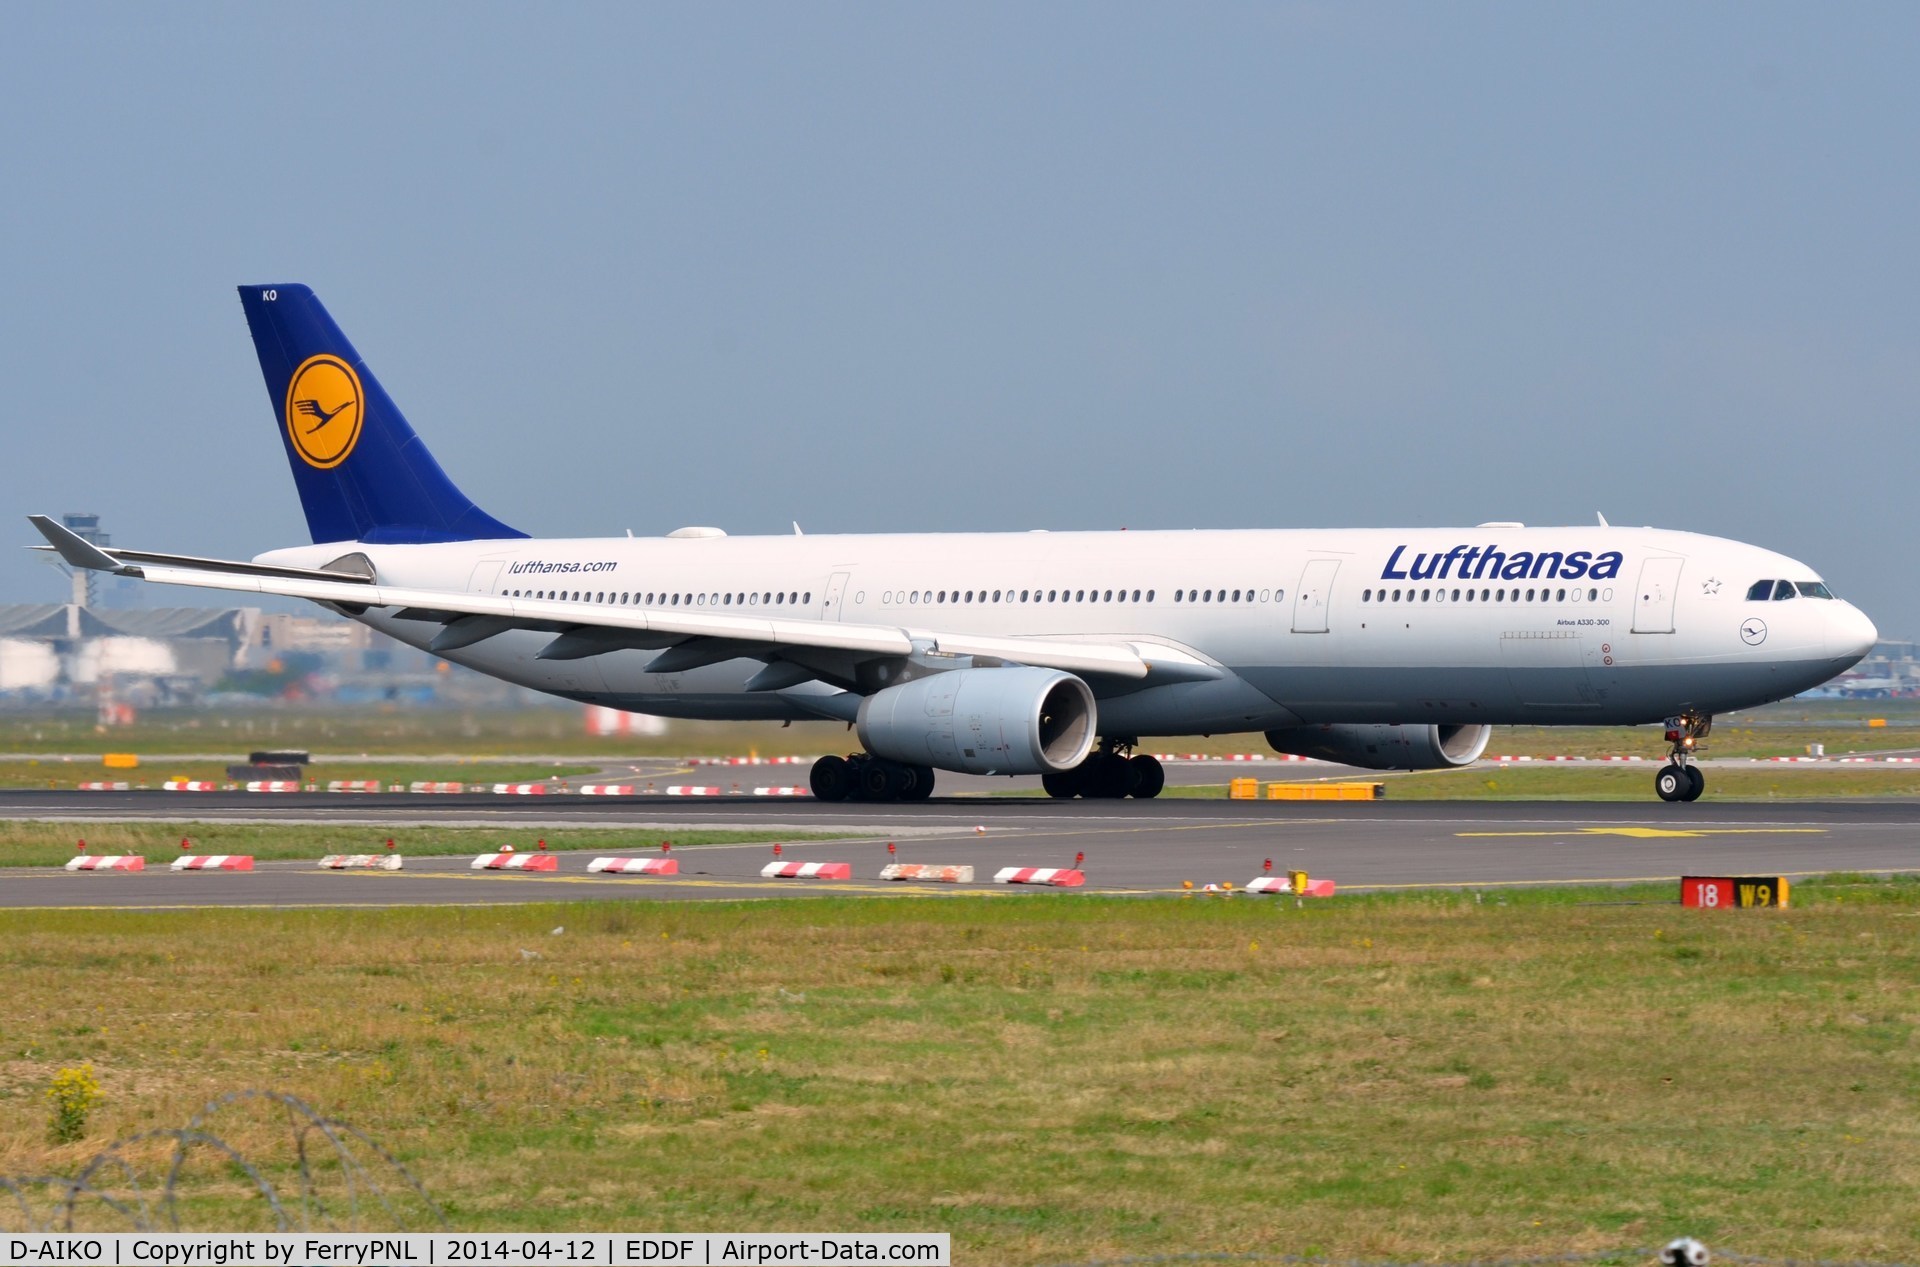 D-AIKO, 2009 Airbus A330-343X C/N 989, Lufthansa A333 during its take-off run.